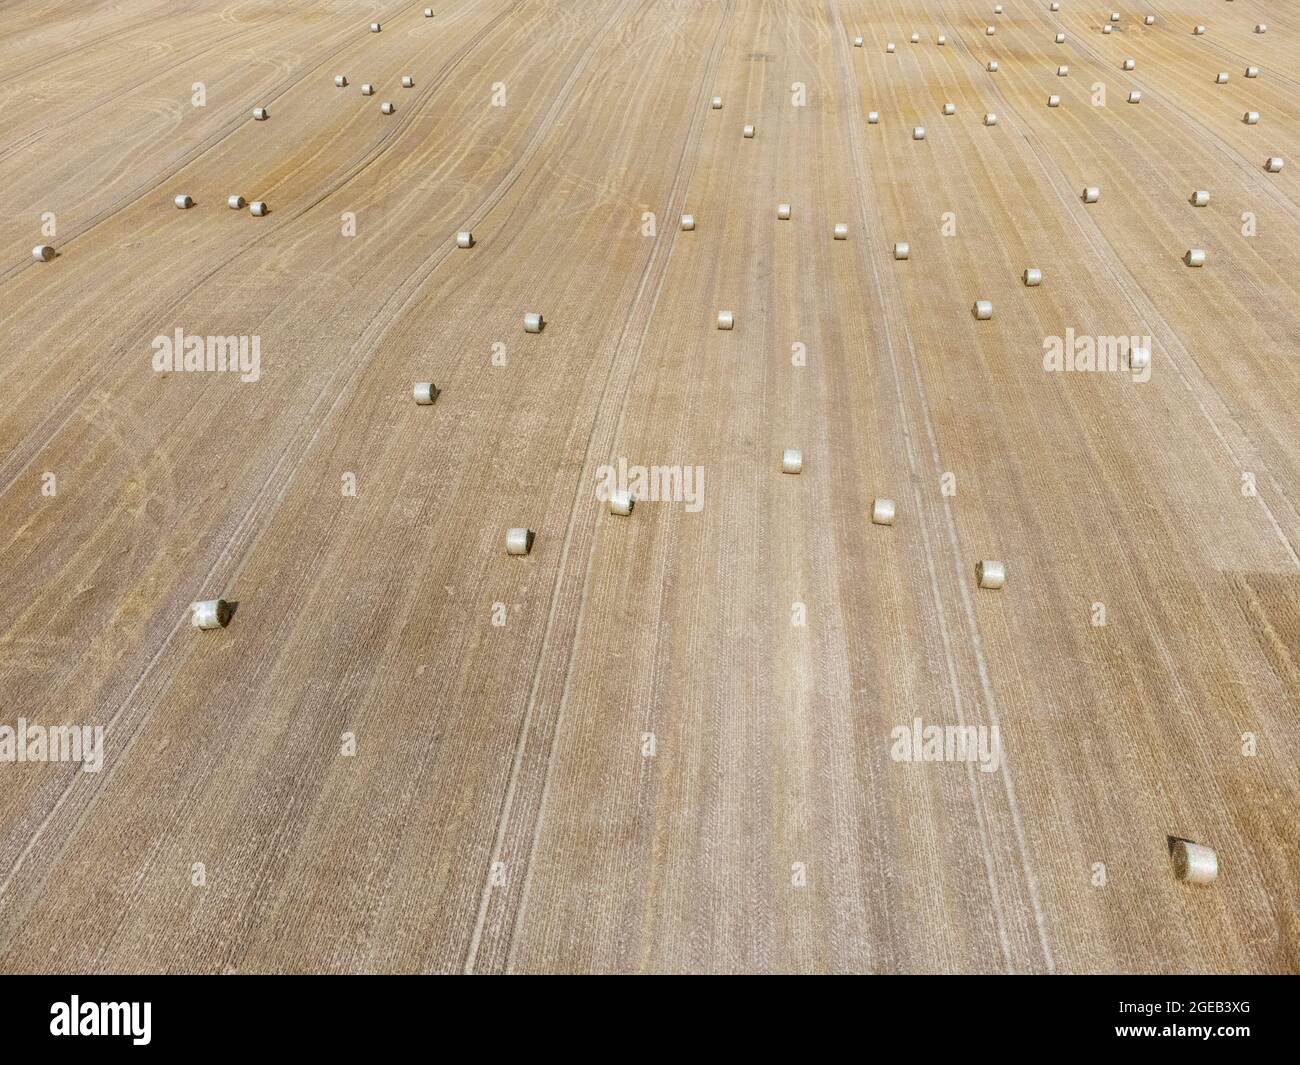 Strahballen auf einem abgeernteten Getreidefeld Foto de stock